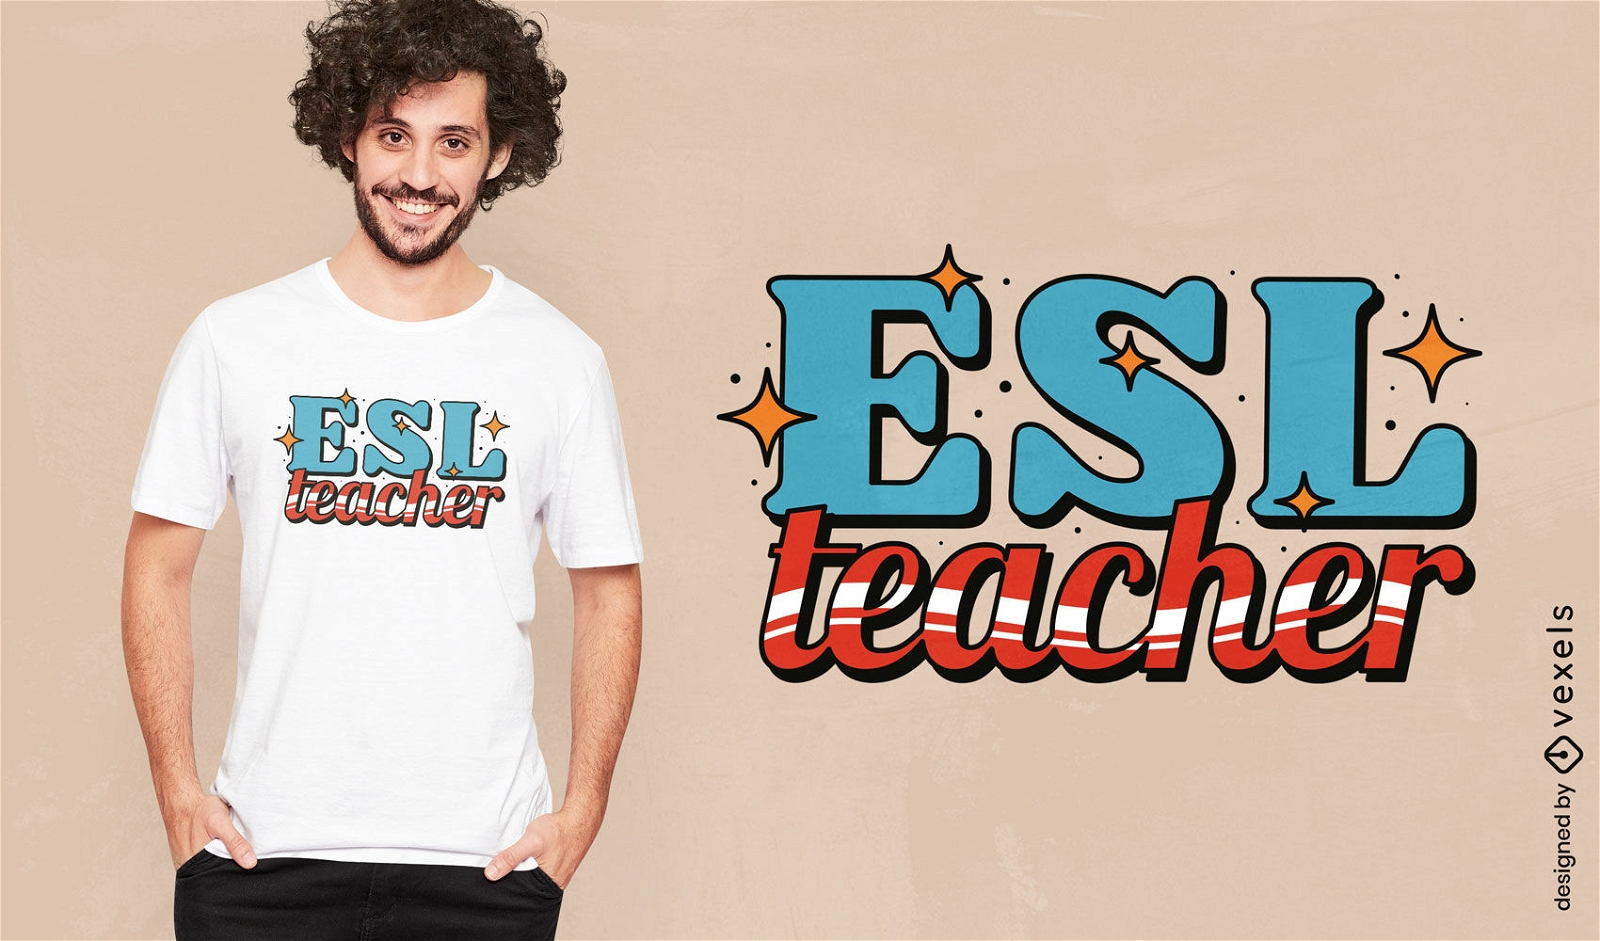 Dise?o de camiseta de profesor de ESL